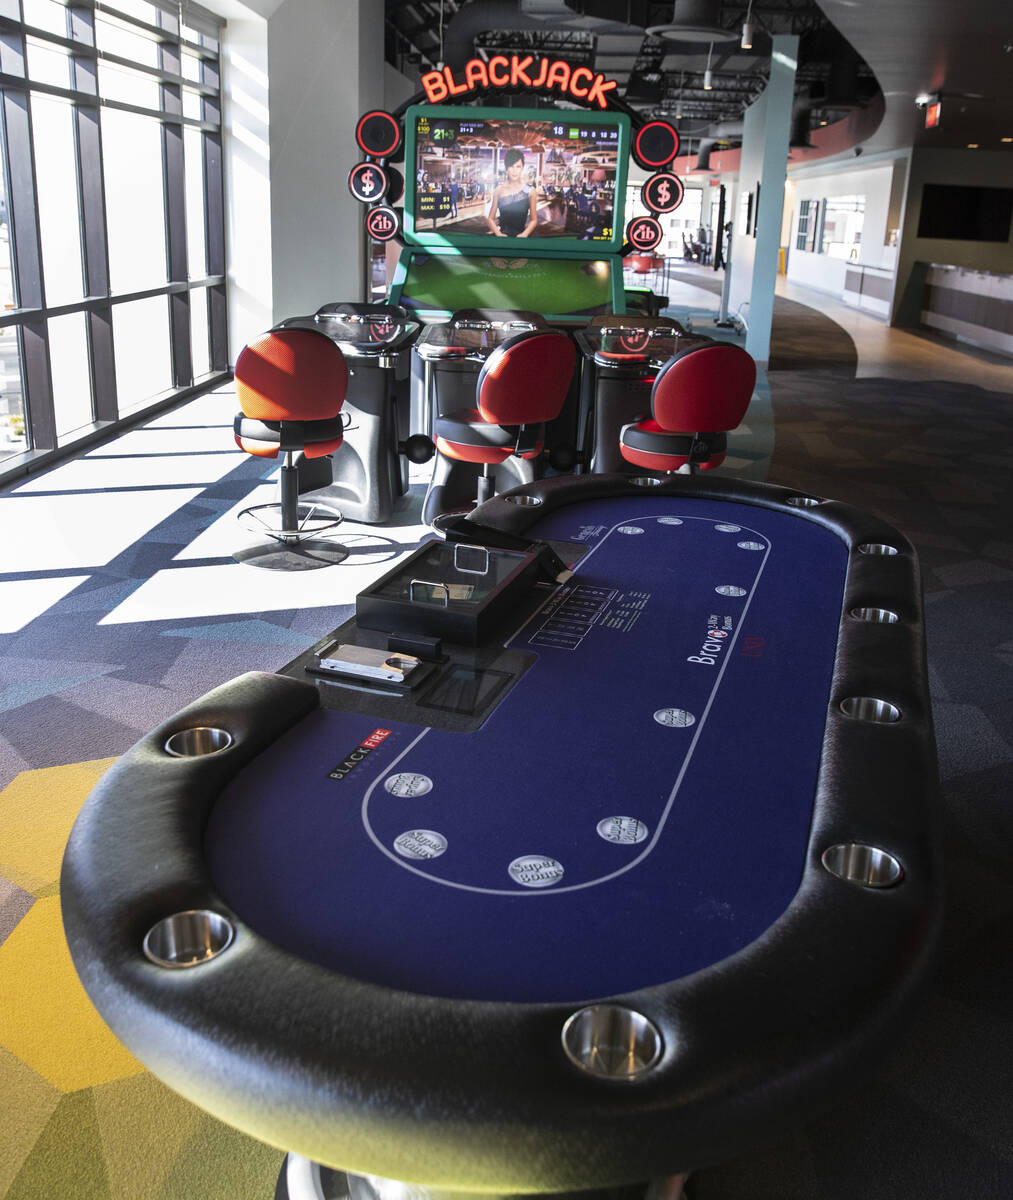 Una mesa de juego y una máquina de video blackjack se muestran en el centro de innovación Bla ...